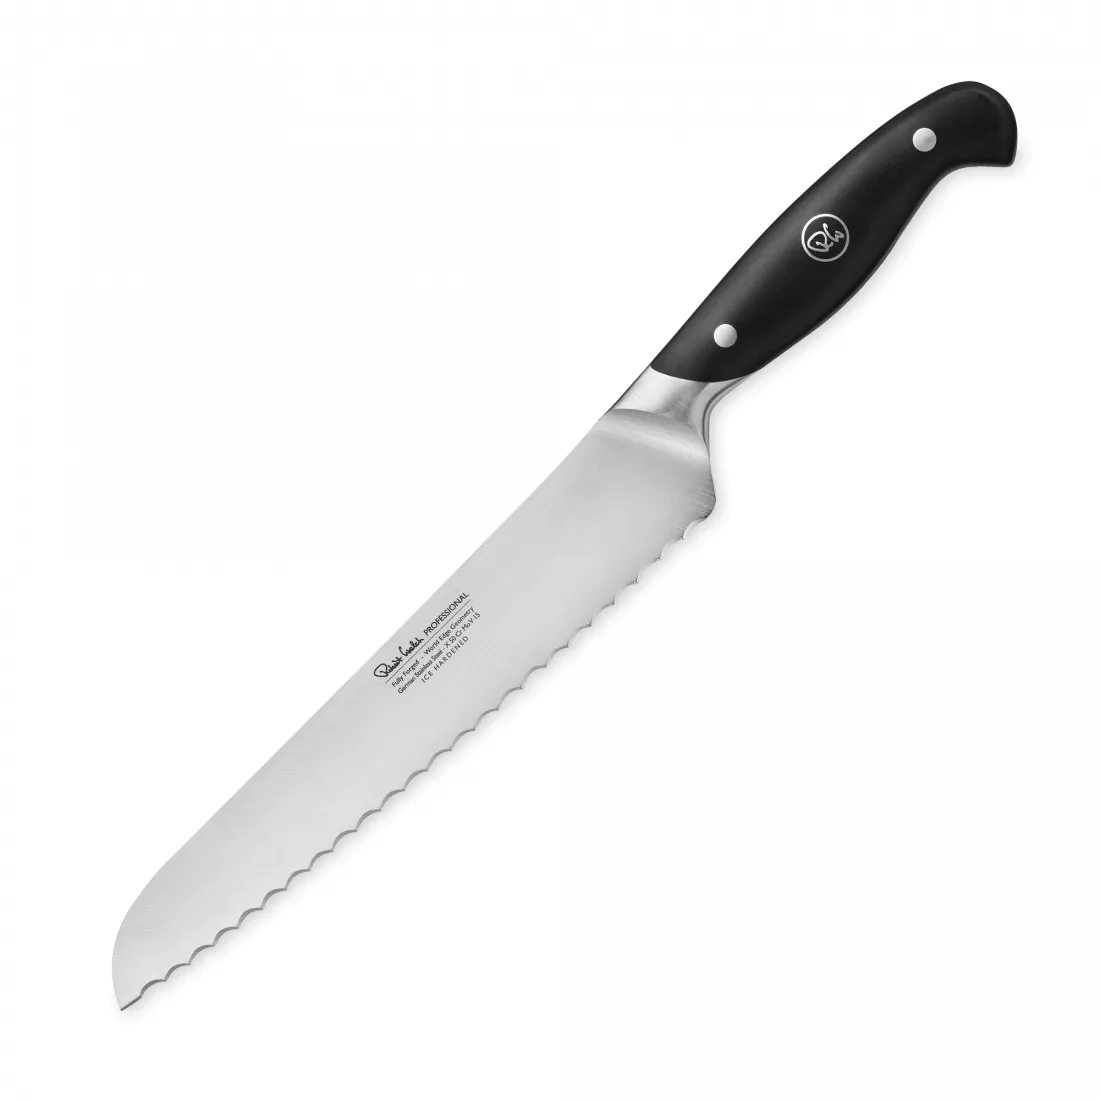 Нож для хлеба Professional, длина лезвия 22 см, кованая нержавеющая сталь, Robert Welch, Великобритания, RWPSA2001V